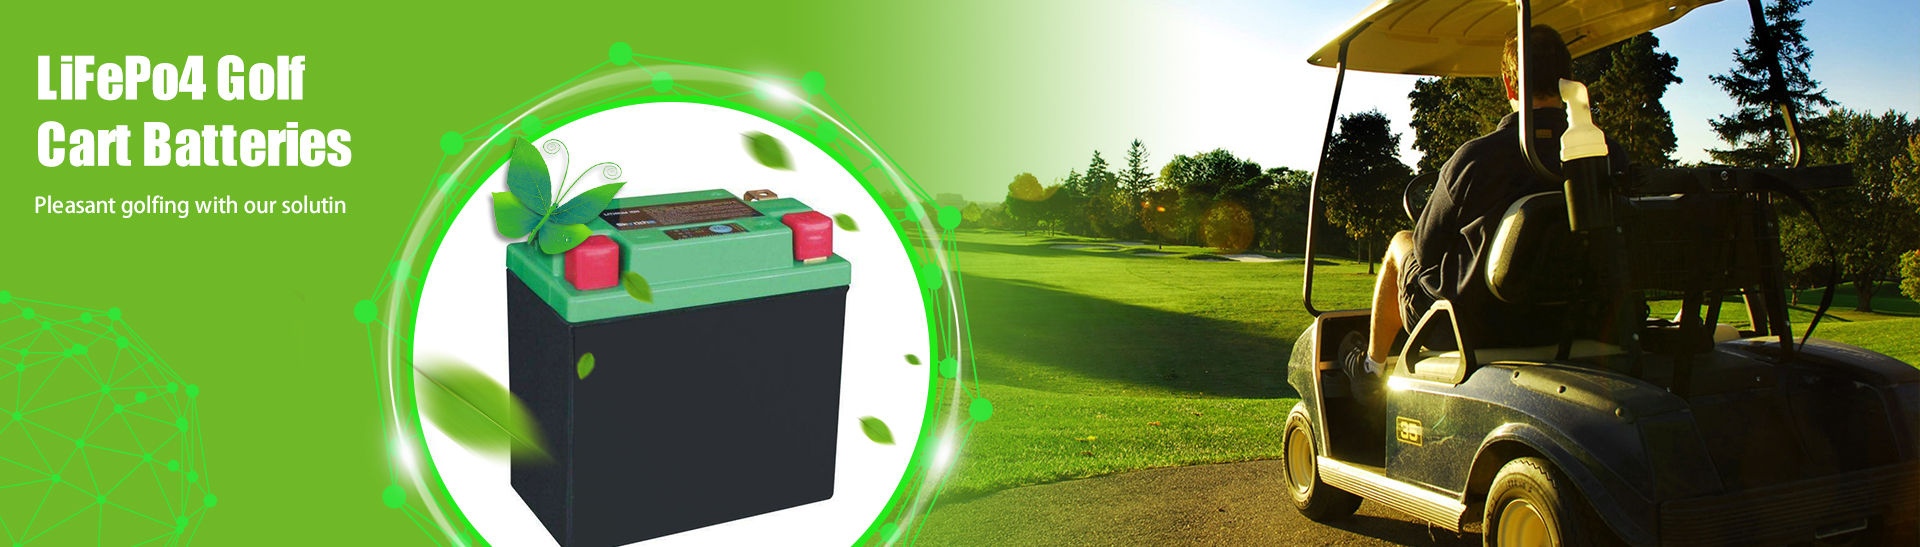 48 volt litiumbatteri för golfbil